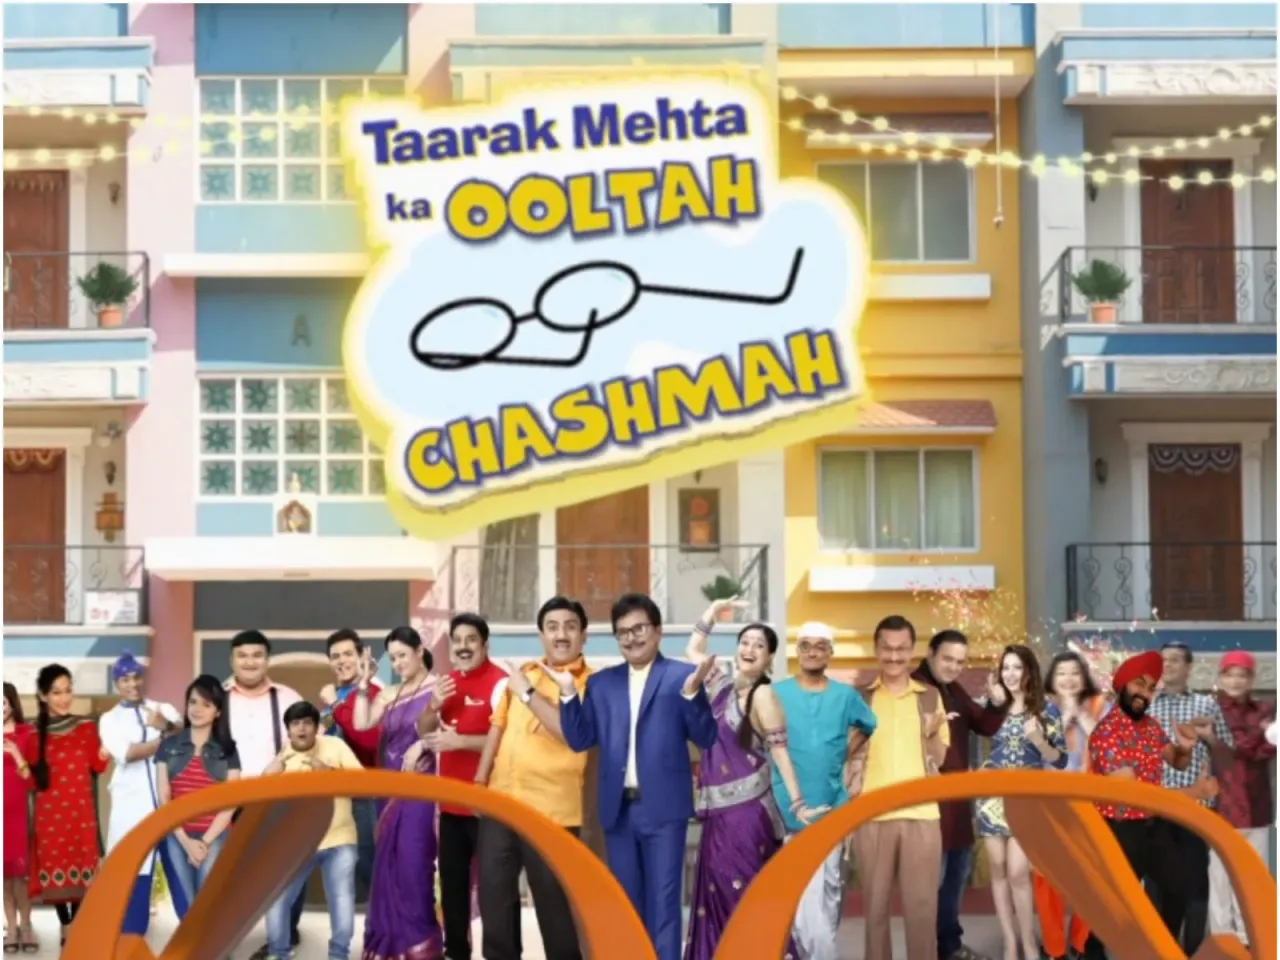 Taarak Mehta Ka Ooltah Chashmah ने जीता एक और पॉपुलैरिटी अवार्ड: मेकर्स ने शो के लिए लोगों के प्यार को दिया श्रेय